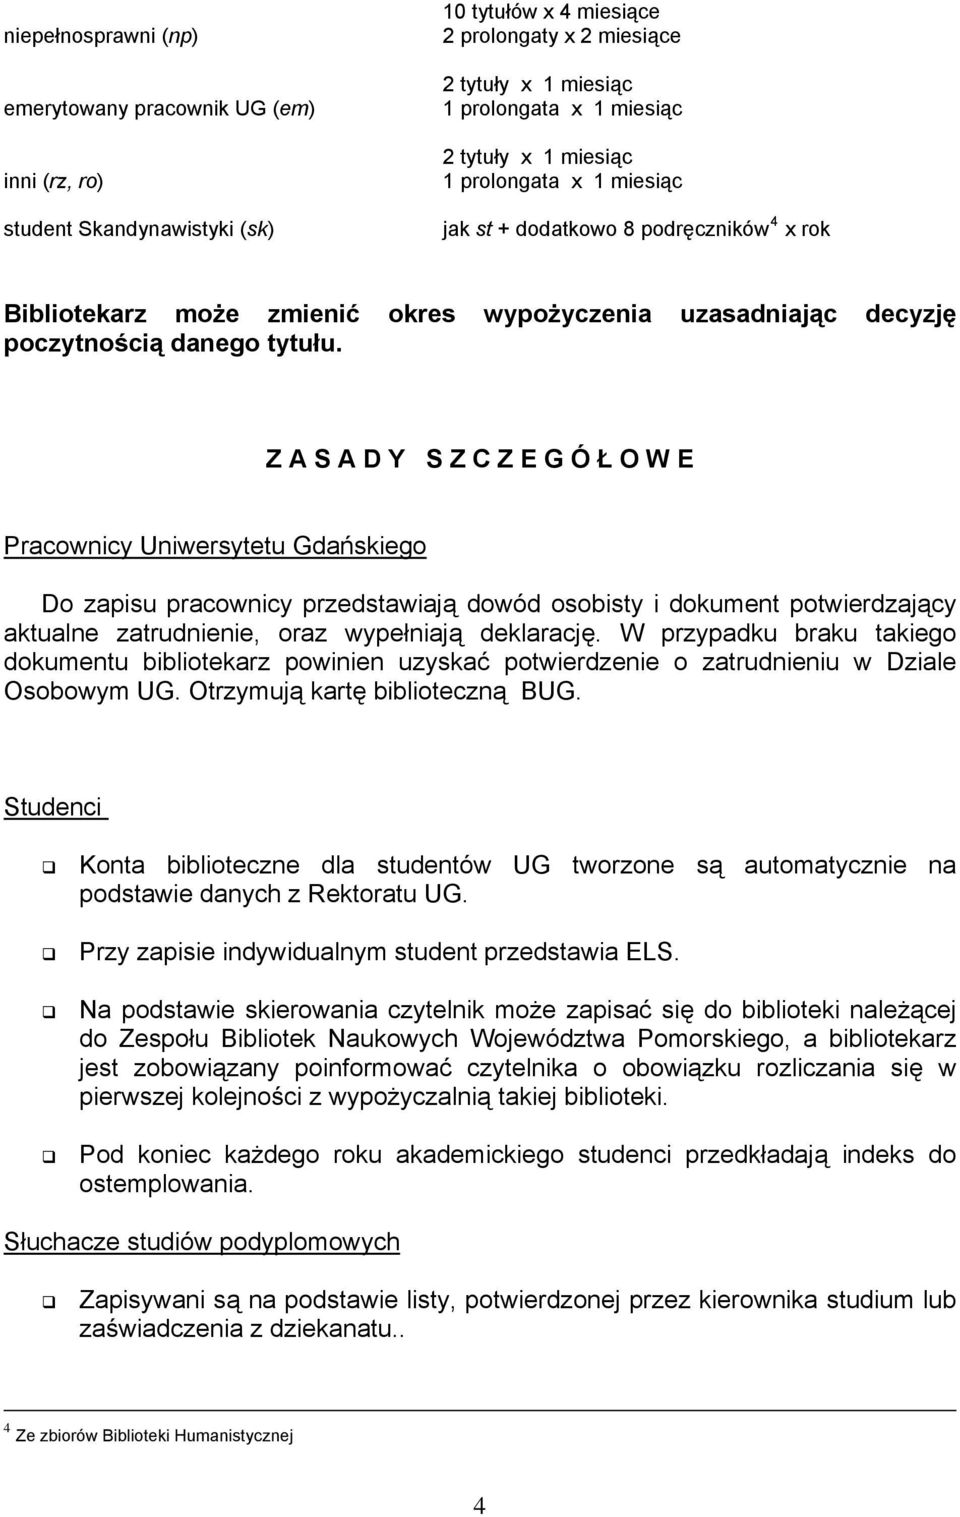 Z A S A D Y S Z C Z E G Ó Ł O W E Pracownicy Uniwersytetu Gdańskiego Do zapisu pracownicy przedstawiają dowód osobisty i dokument potwierdzający aktualne zatrudnienie, oraz wypełniają deklarację.